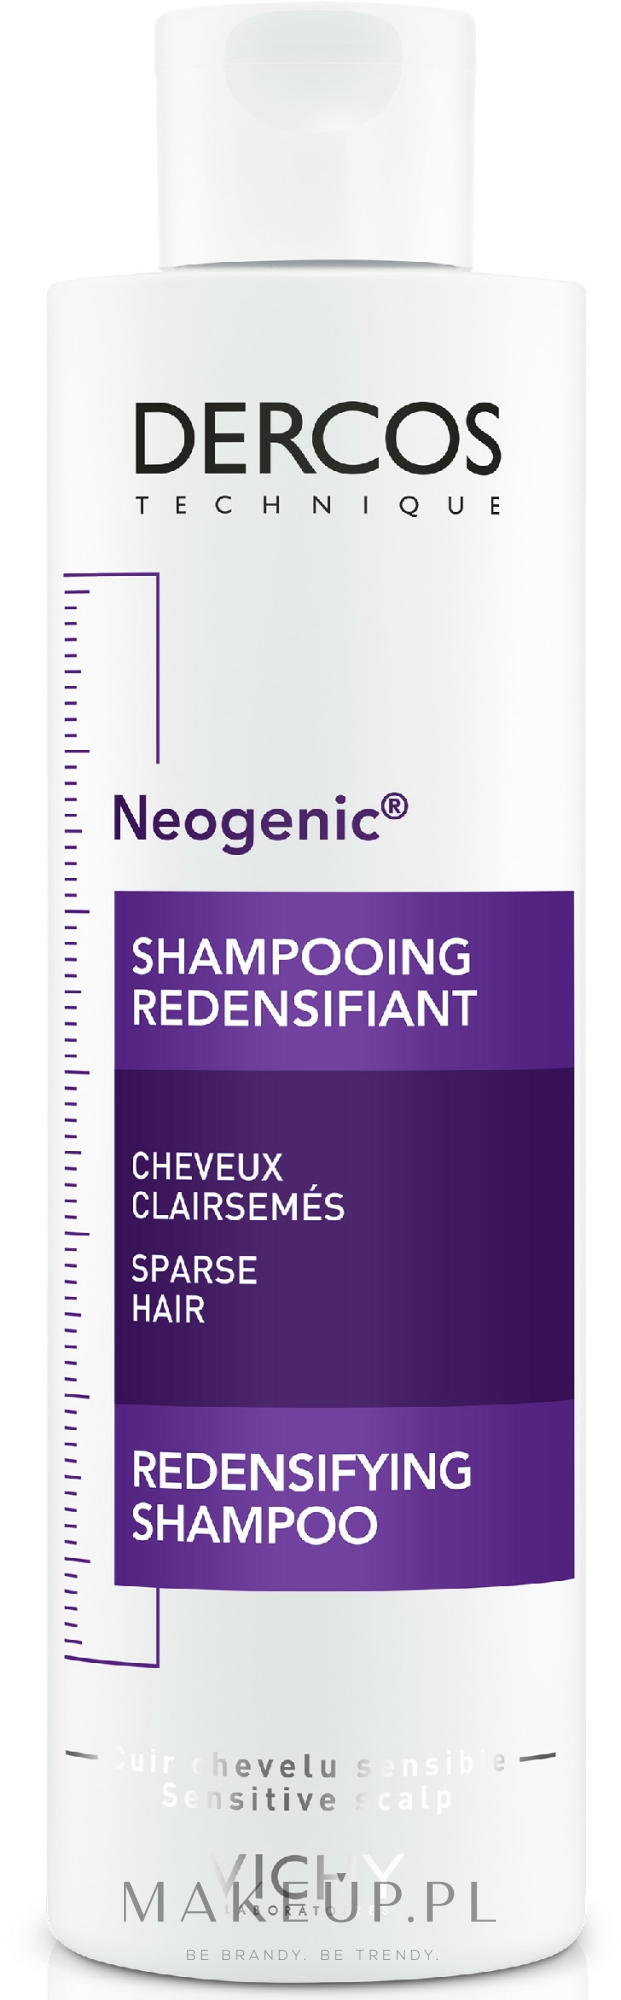 szampon clear damaged & colored hair repair